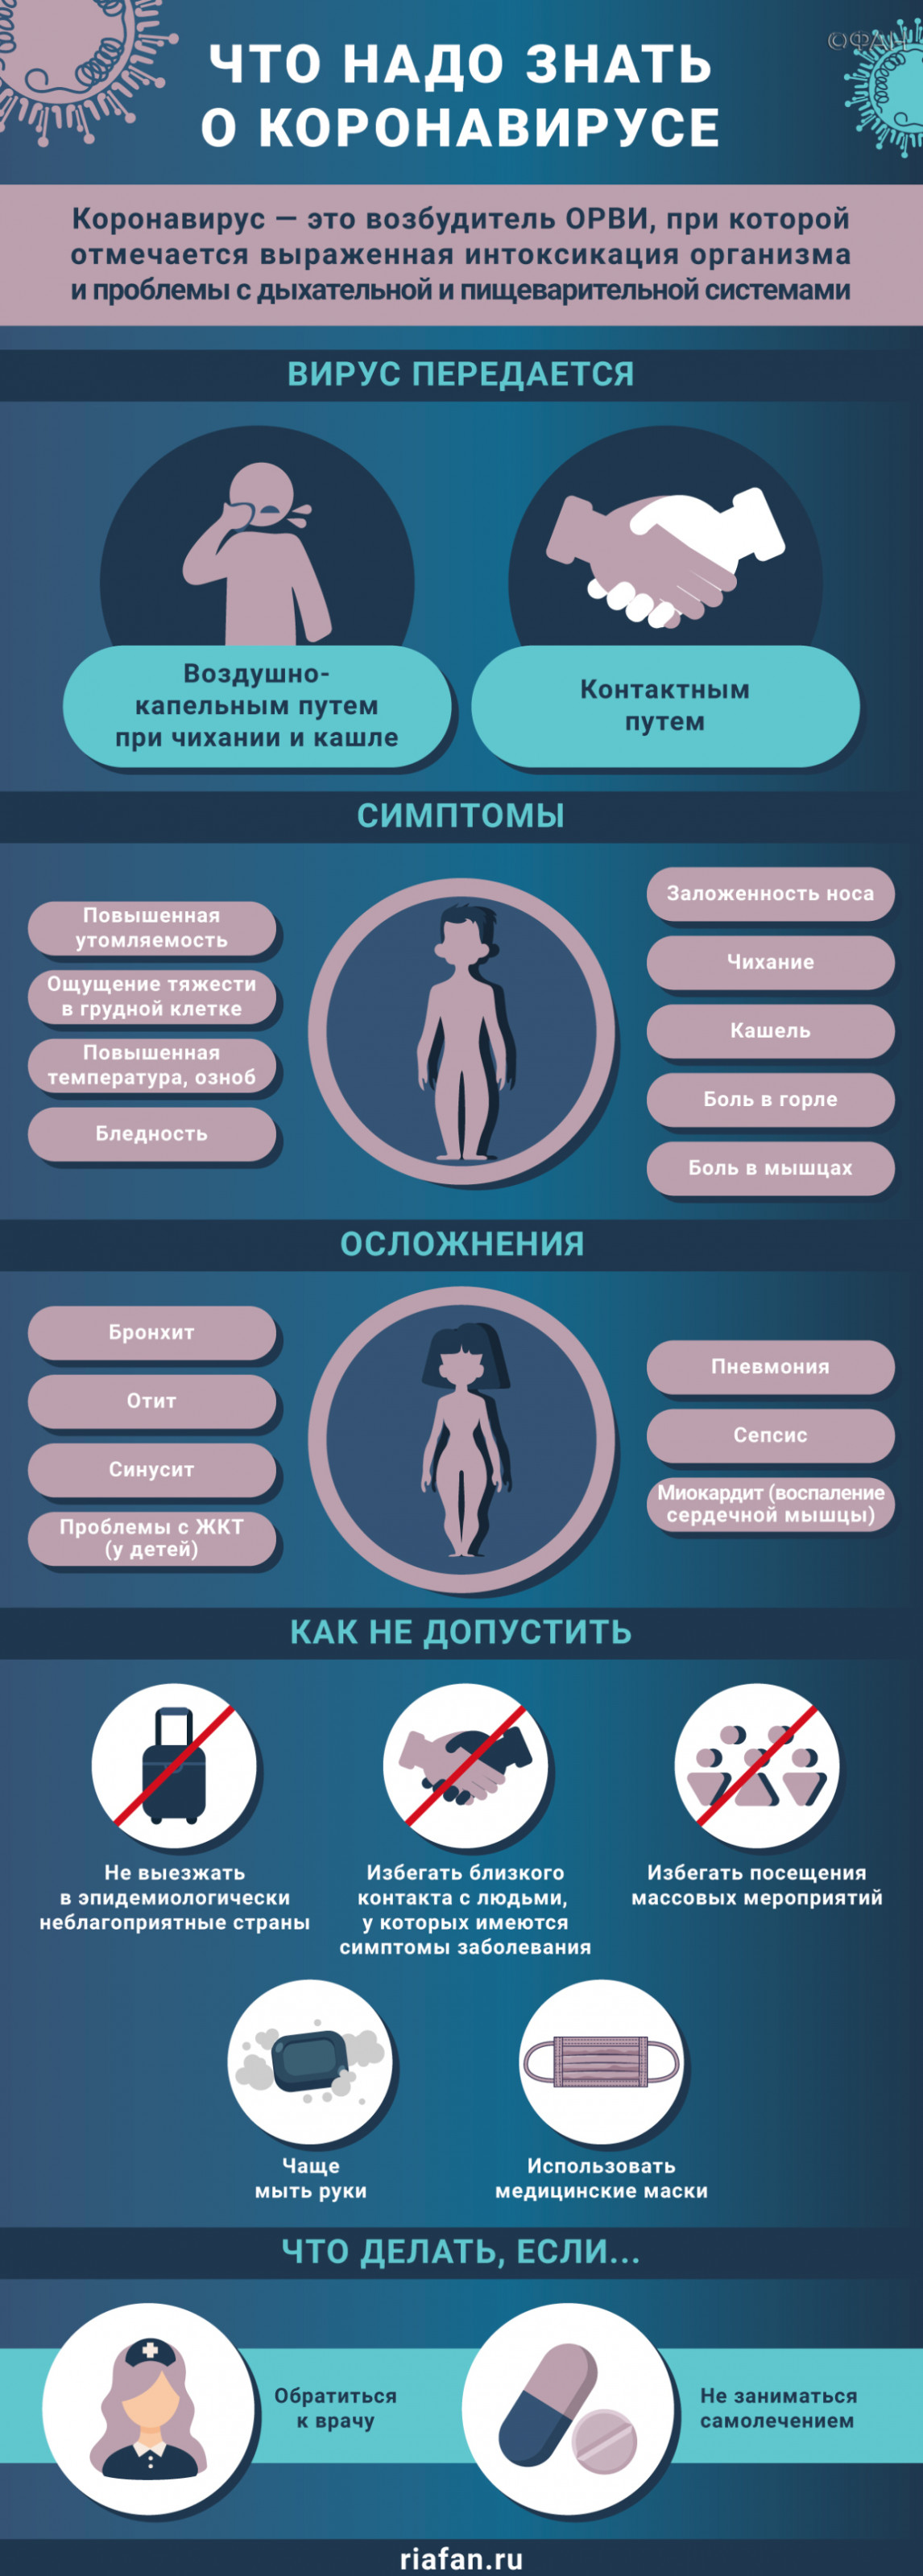 Медики за сутки выявили 162 случая коронавируса в Петербурге